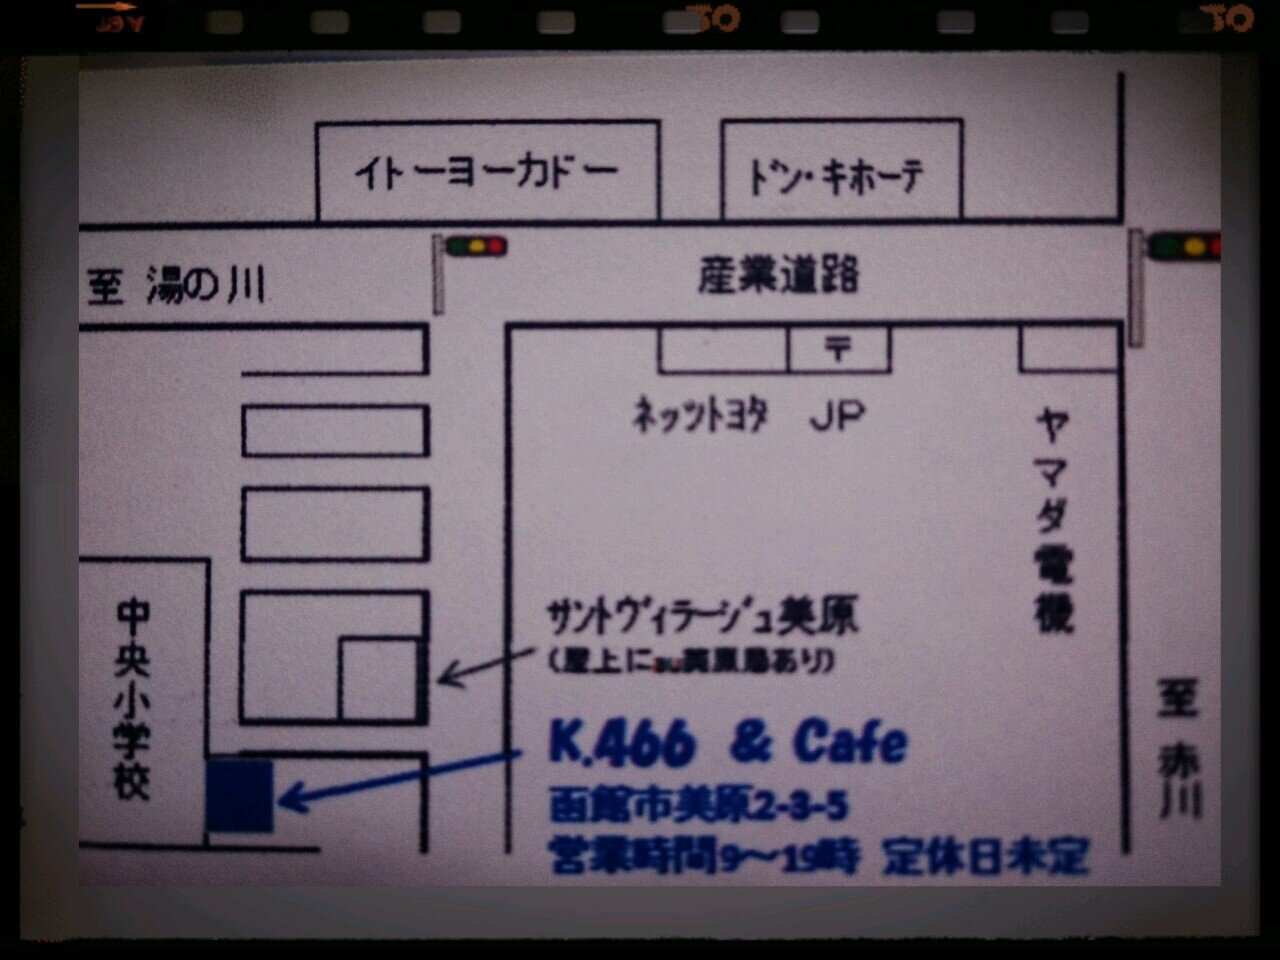 モーツァルトのピアノ協奏曲第20番を聴きながら珈琲を飲みませんか？喫茶店 k.466&Cafe